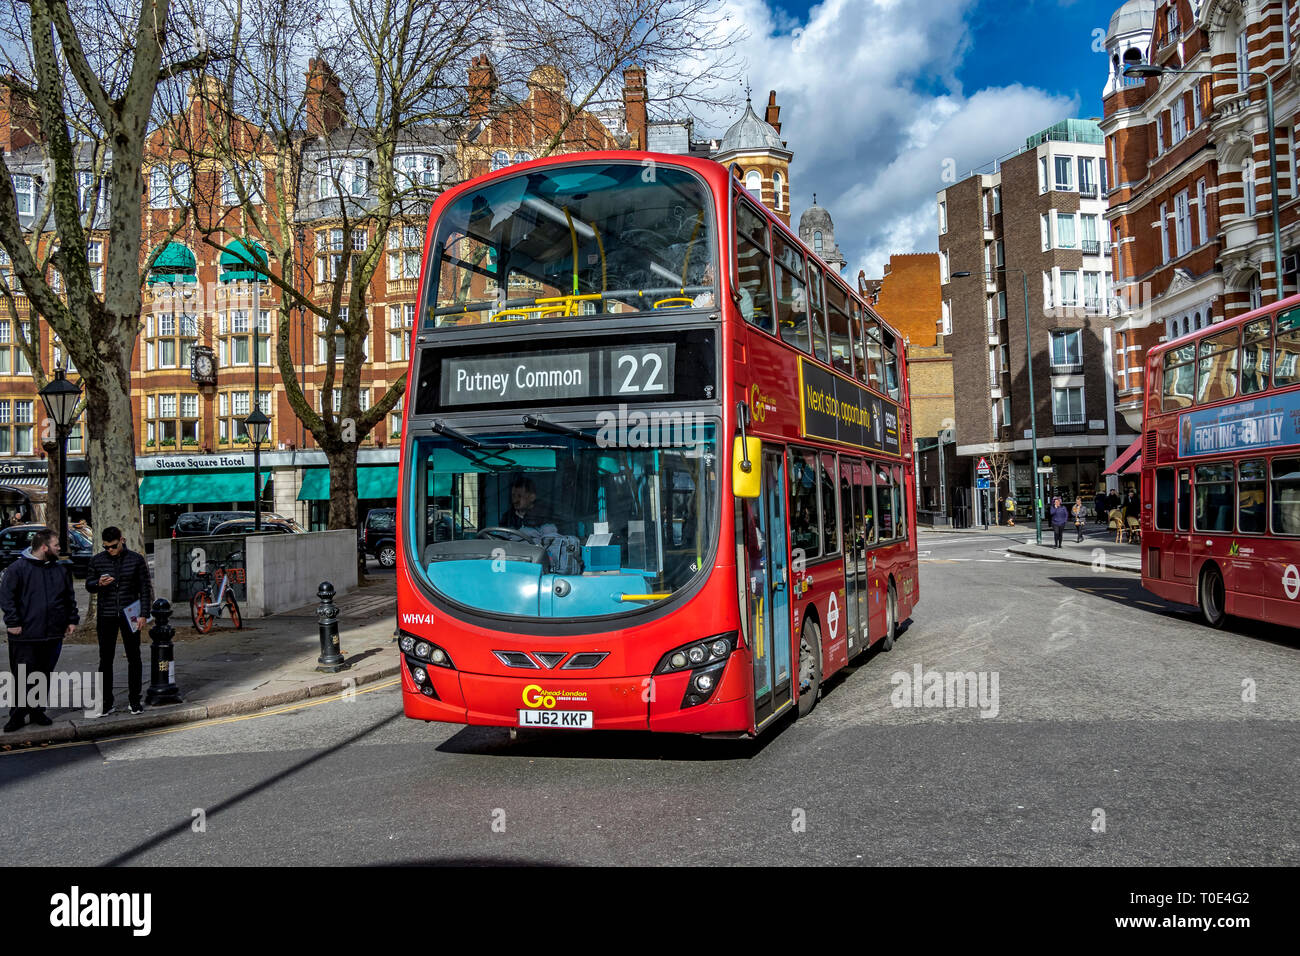 Un bus londonien rouge à impériale numéro 22 qui fait le tour de Sloane Square en route vers Putney Common, Londres, Royaume-Uni Banque D'Images